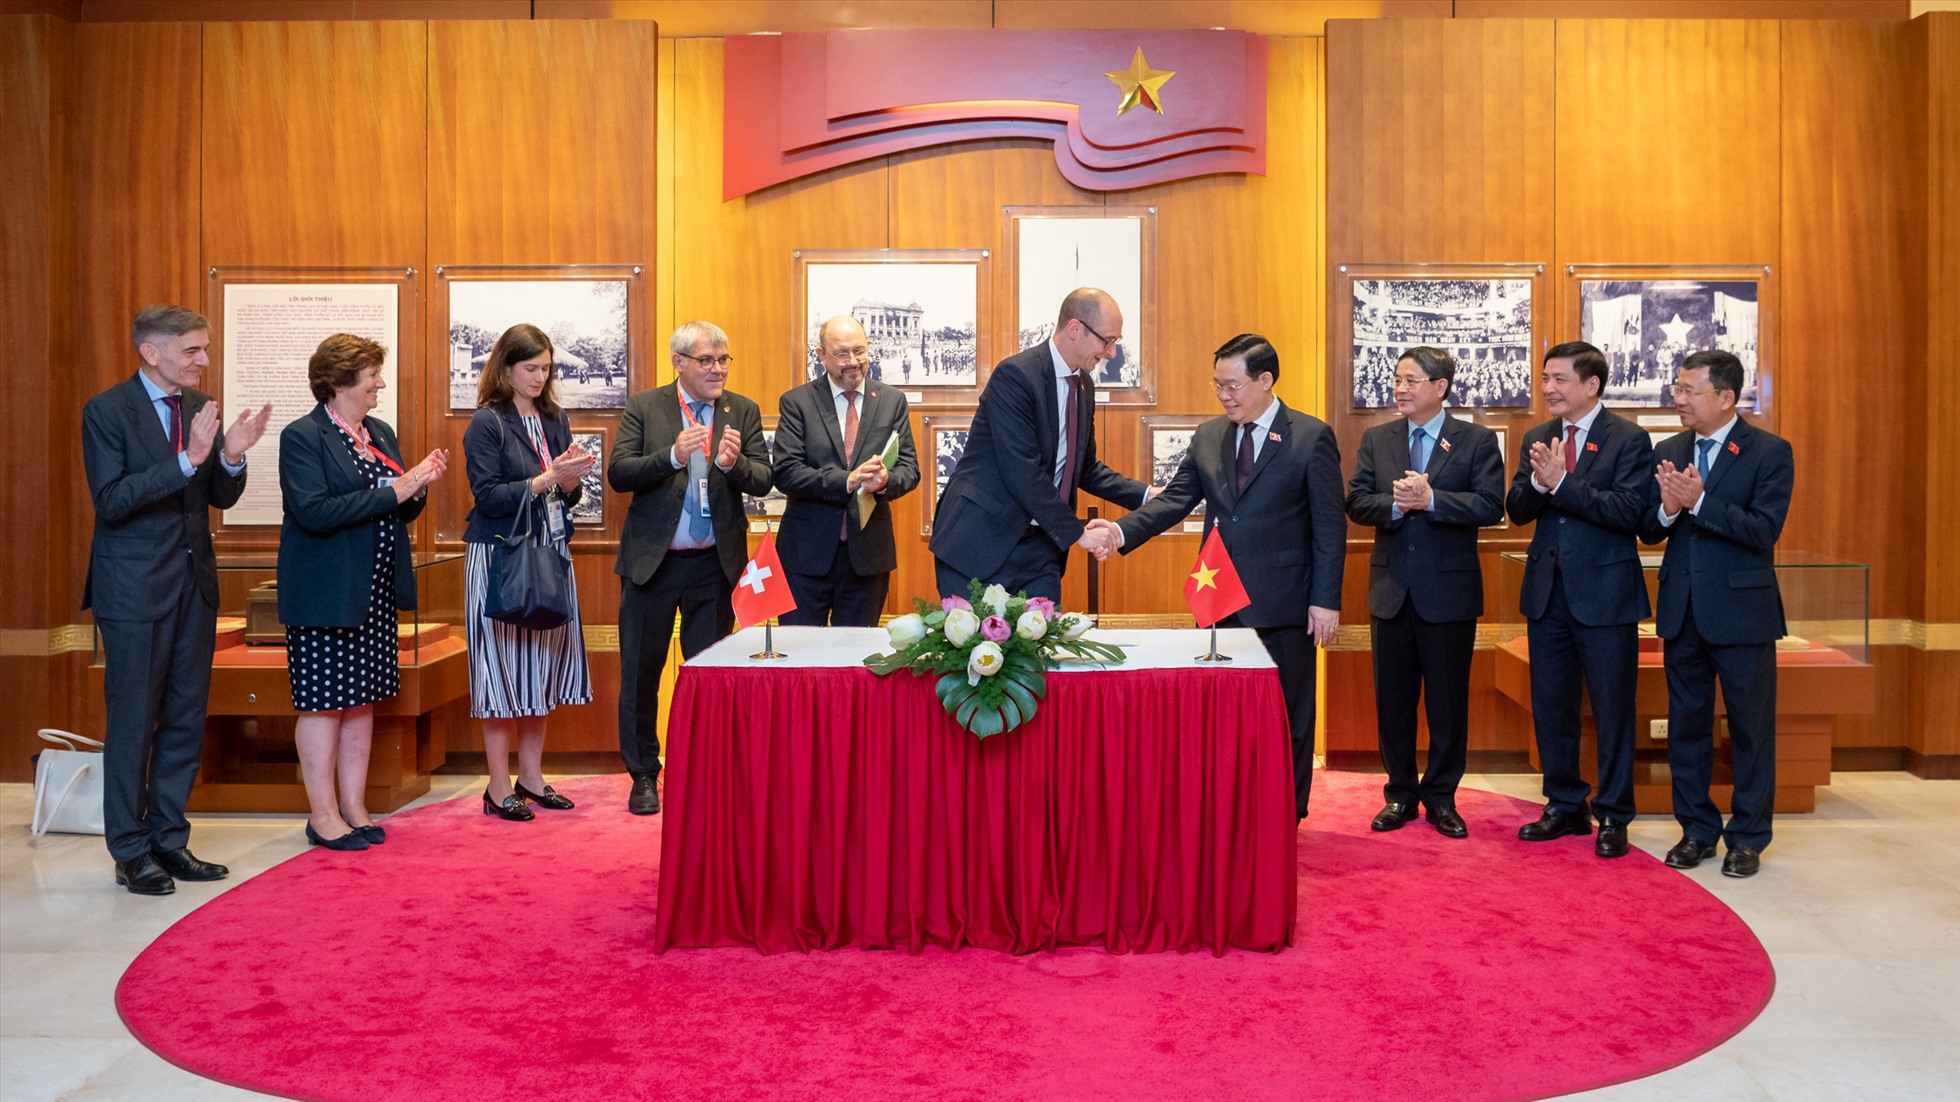 Ngay sau lễ đón chính thức, Chủ tịch Quốc hội Vương Đình Huệ và Chủ tịch Hội đồng Quốc gia Thụy Sĩ Martin Candinas đã thăm Phòng Truyền thống Quốc hội và ký Sổ vàng lưu niệm. Ảnh: Quochoi.vn